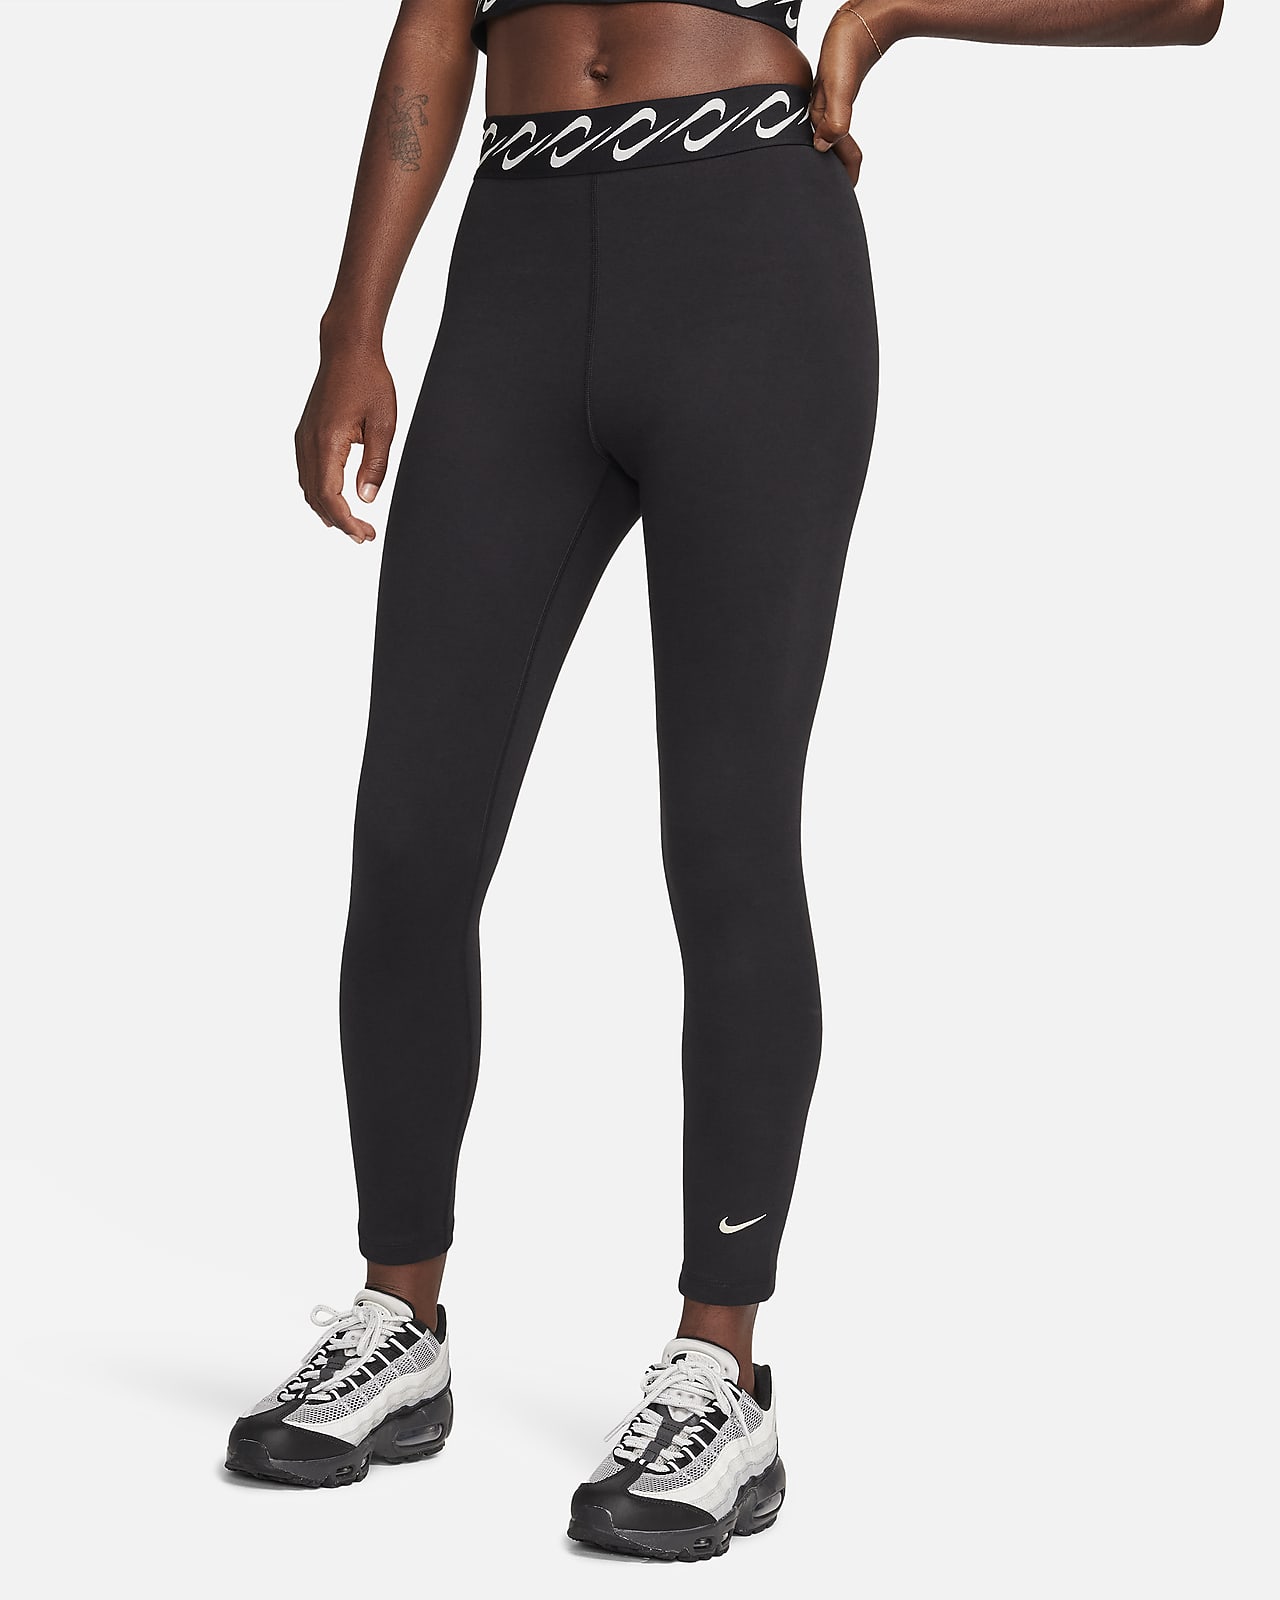 Leggings de cintura alta 7/8 para mujer Nike Yoga.